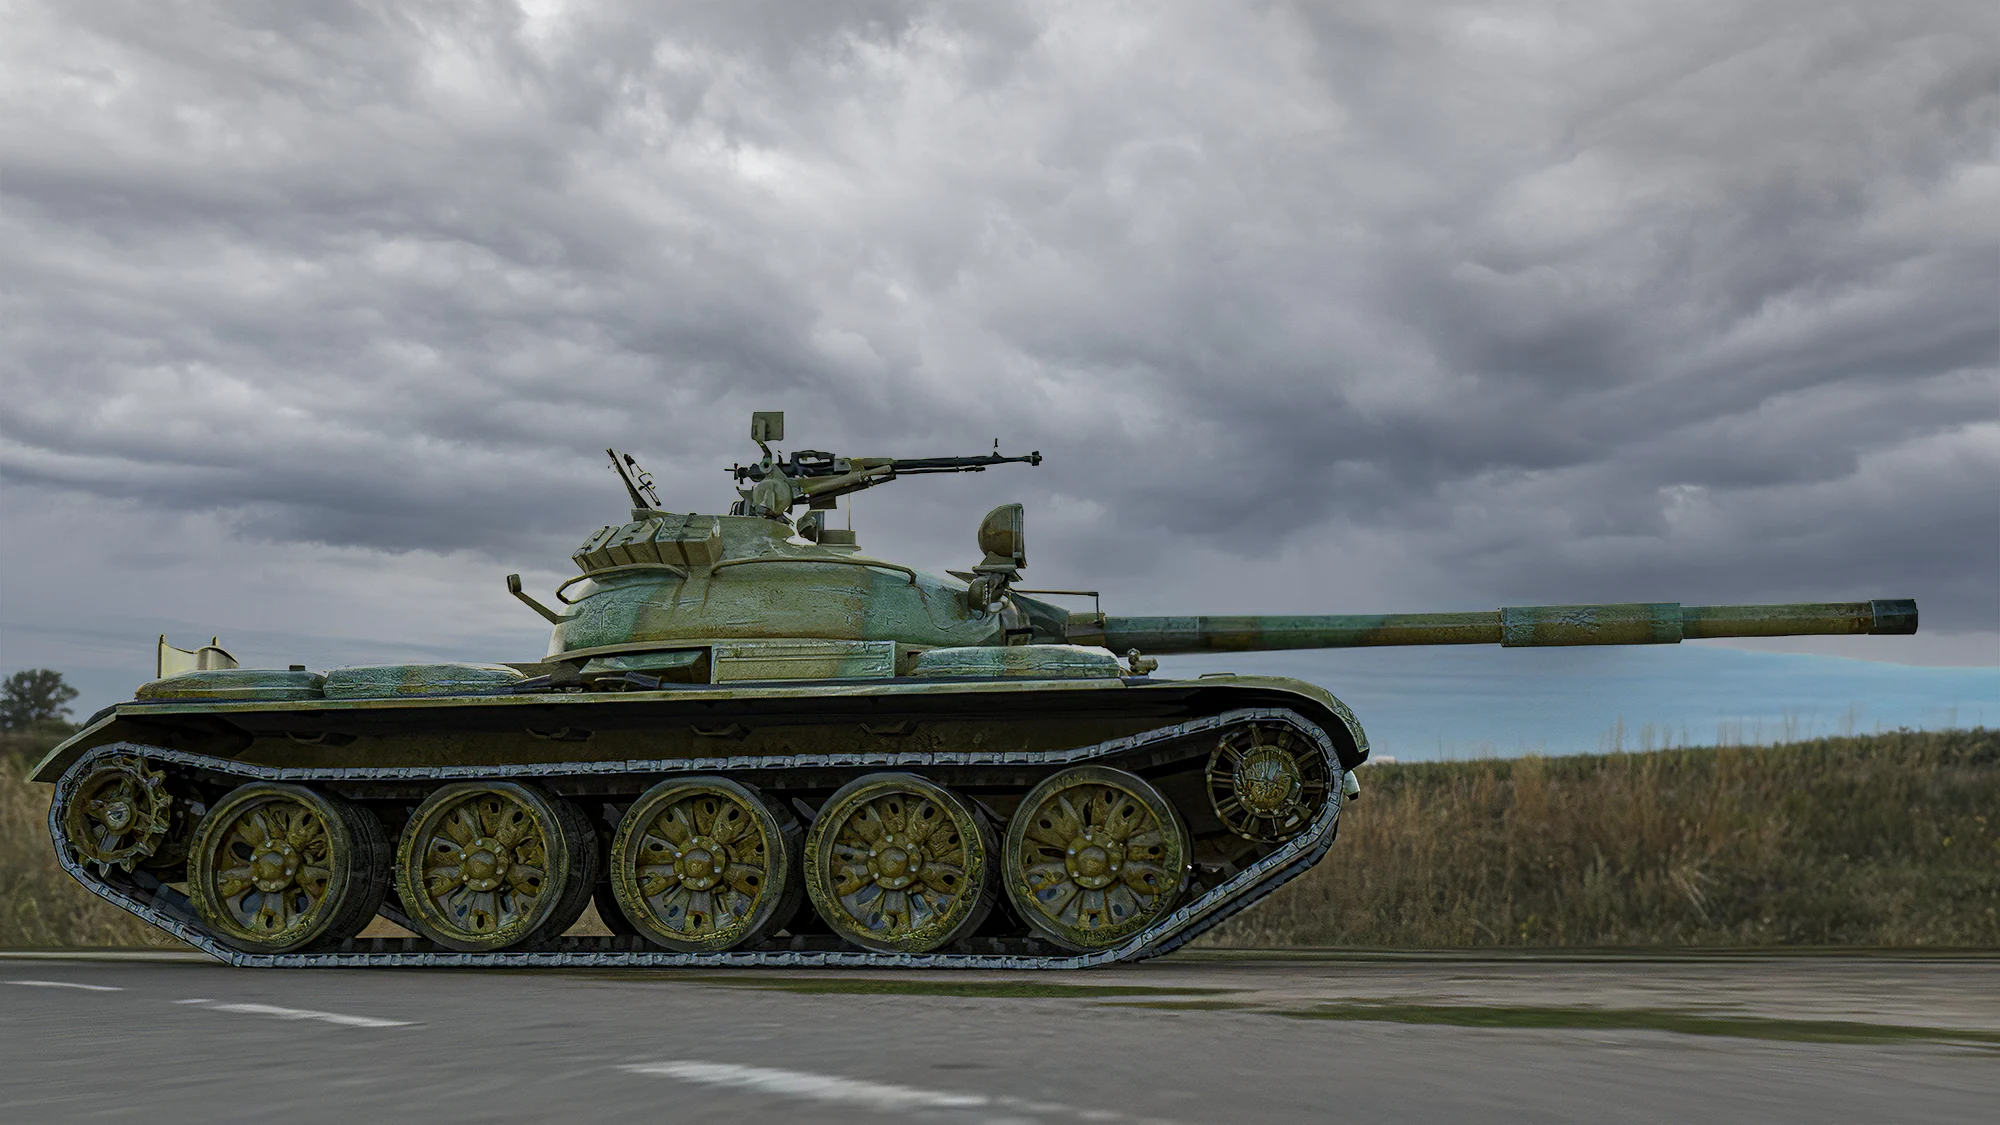 Putin desesperado: El viejo tanque T-62 vuelve a cabalgar